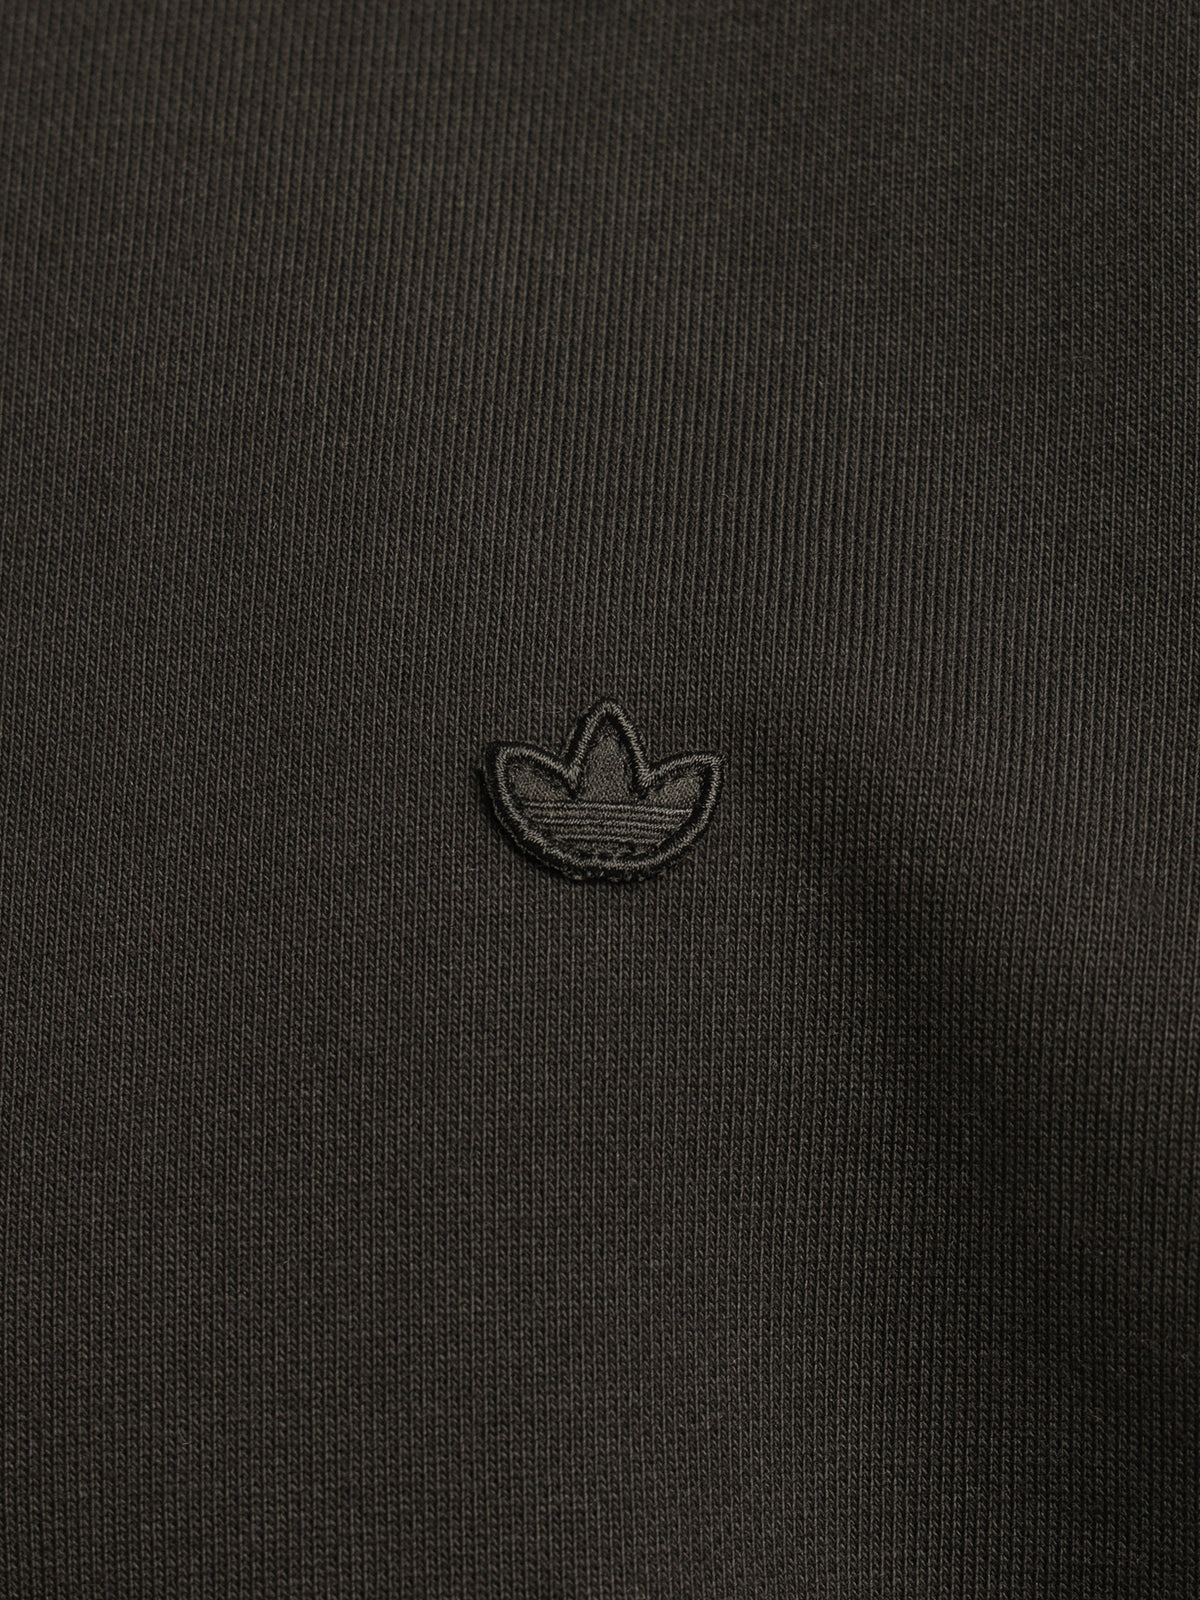 Adicolor Trefoil Crewneck Sweatshirt in Black